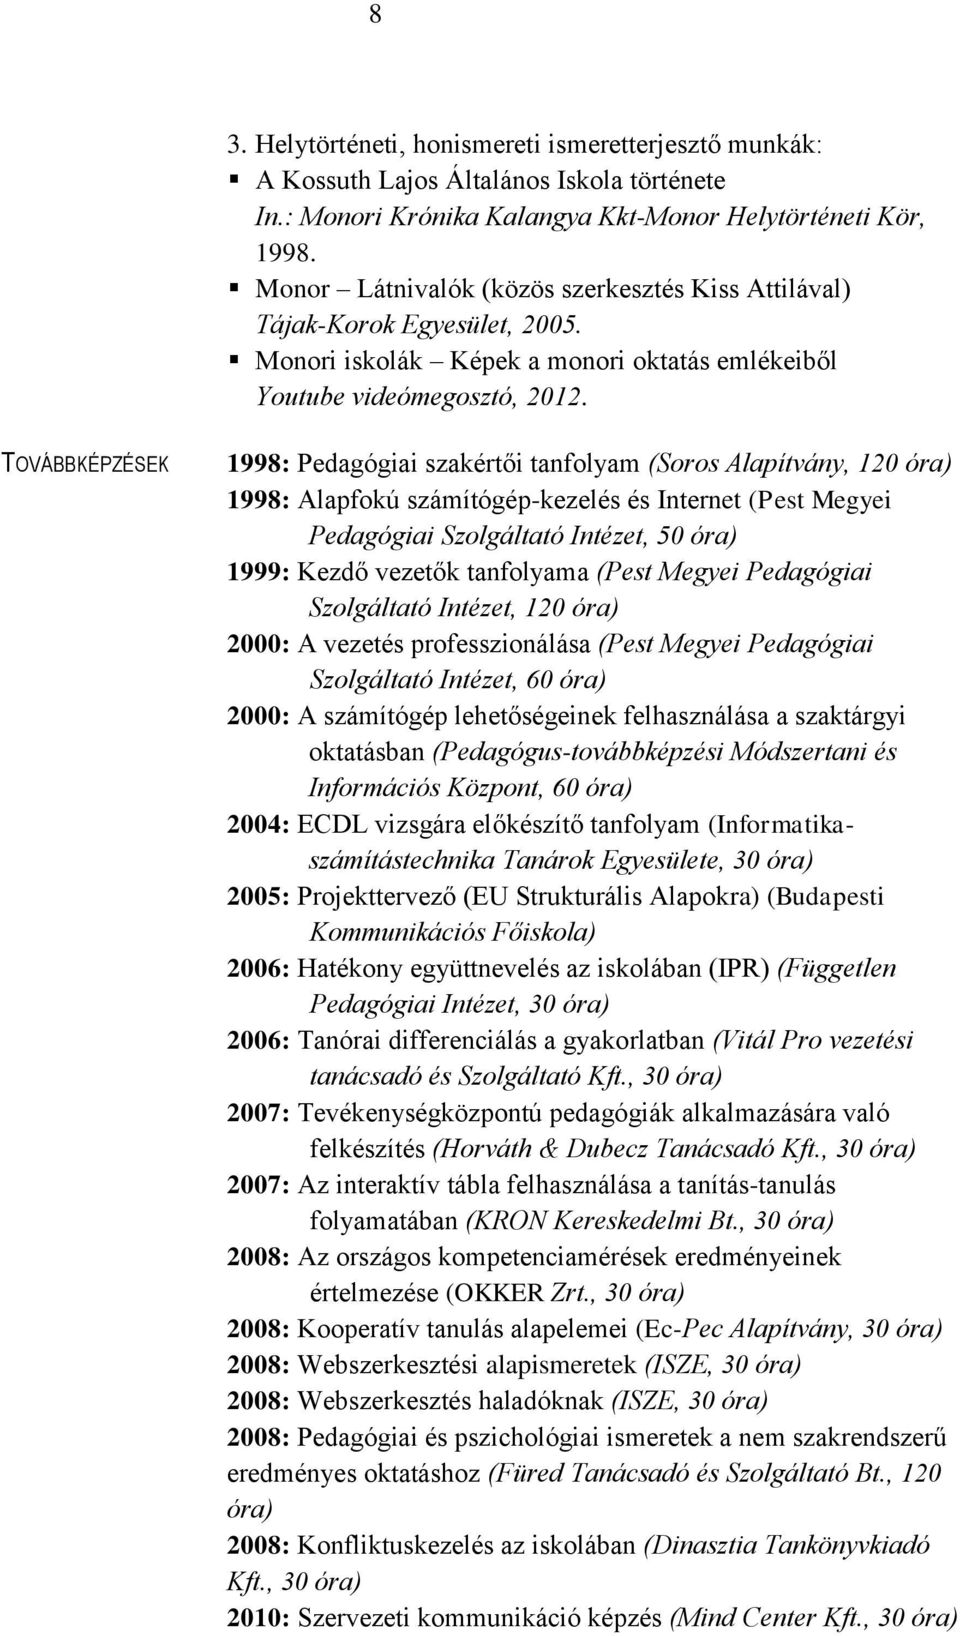 TOVÁBBKÉPZÉSEK 1998: Pedagógiai szakértői tanfolyam (Soros Alapítvány, 120 óra) 1998: Alapfokú számítógép-kezelés és Internet (Pest Megyei Pedagógiai Szolgáltató Intézet, 50 óra) 1999: Kezdő vezetők